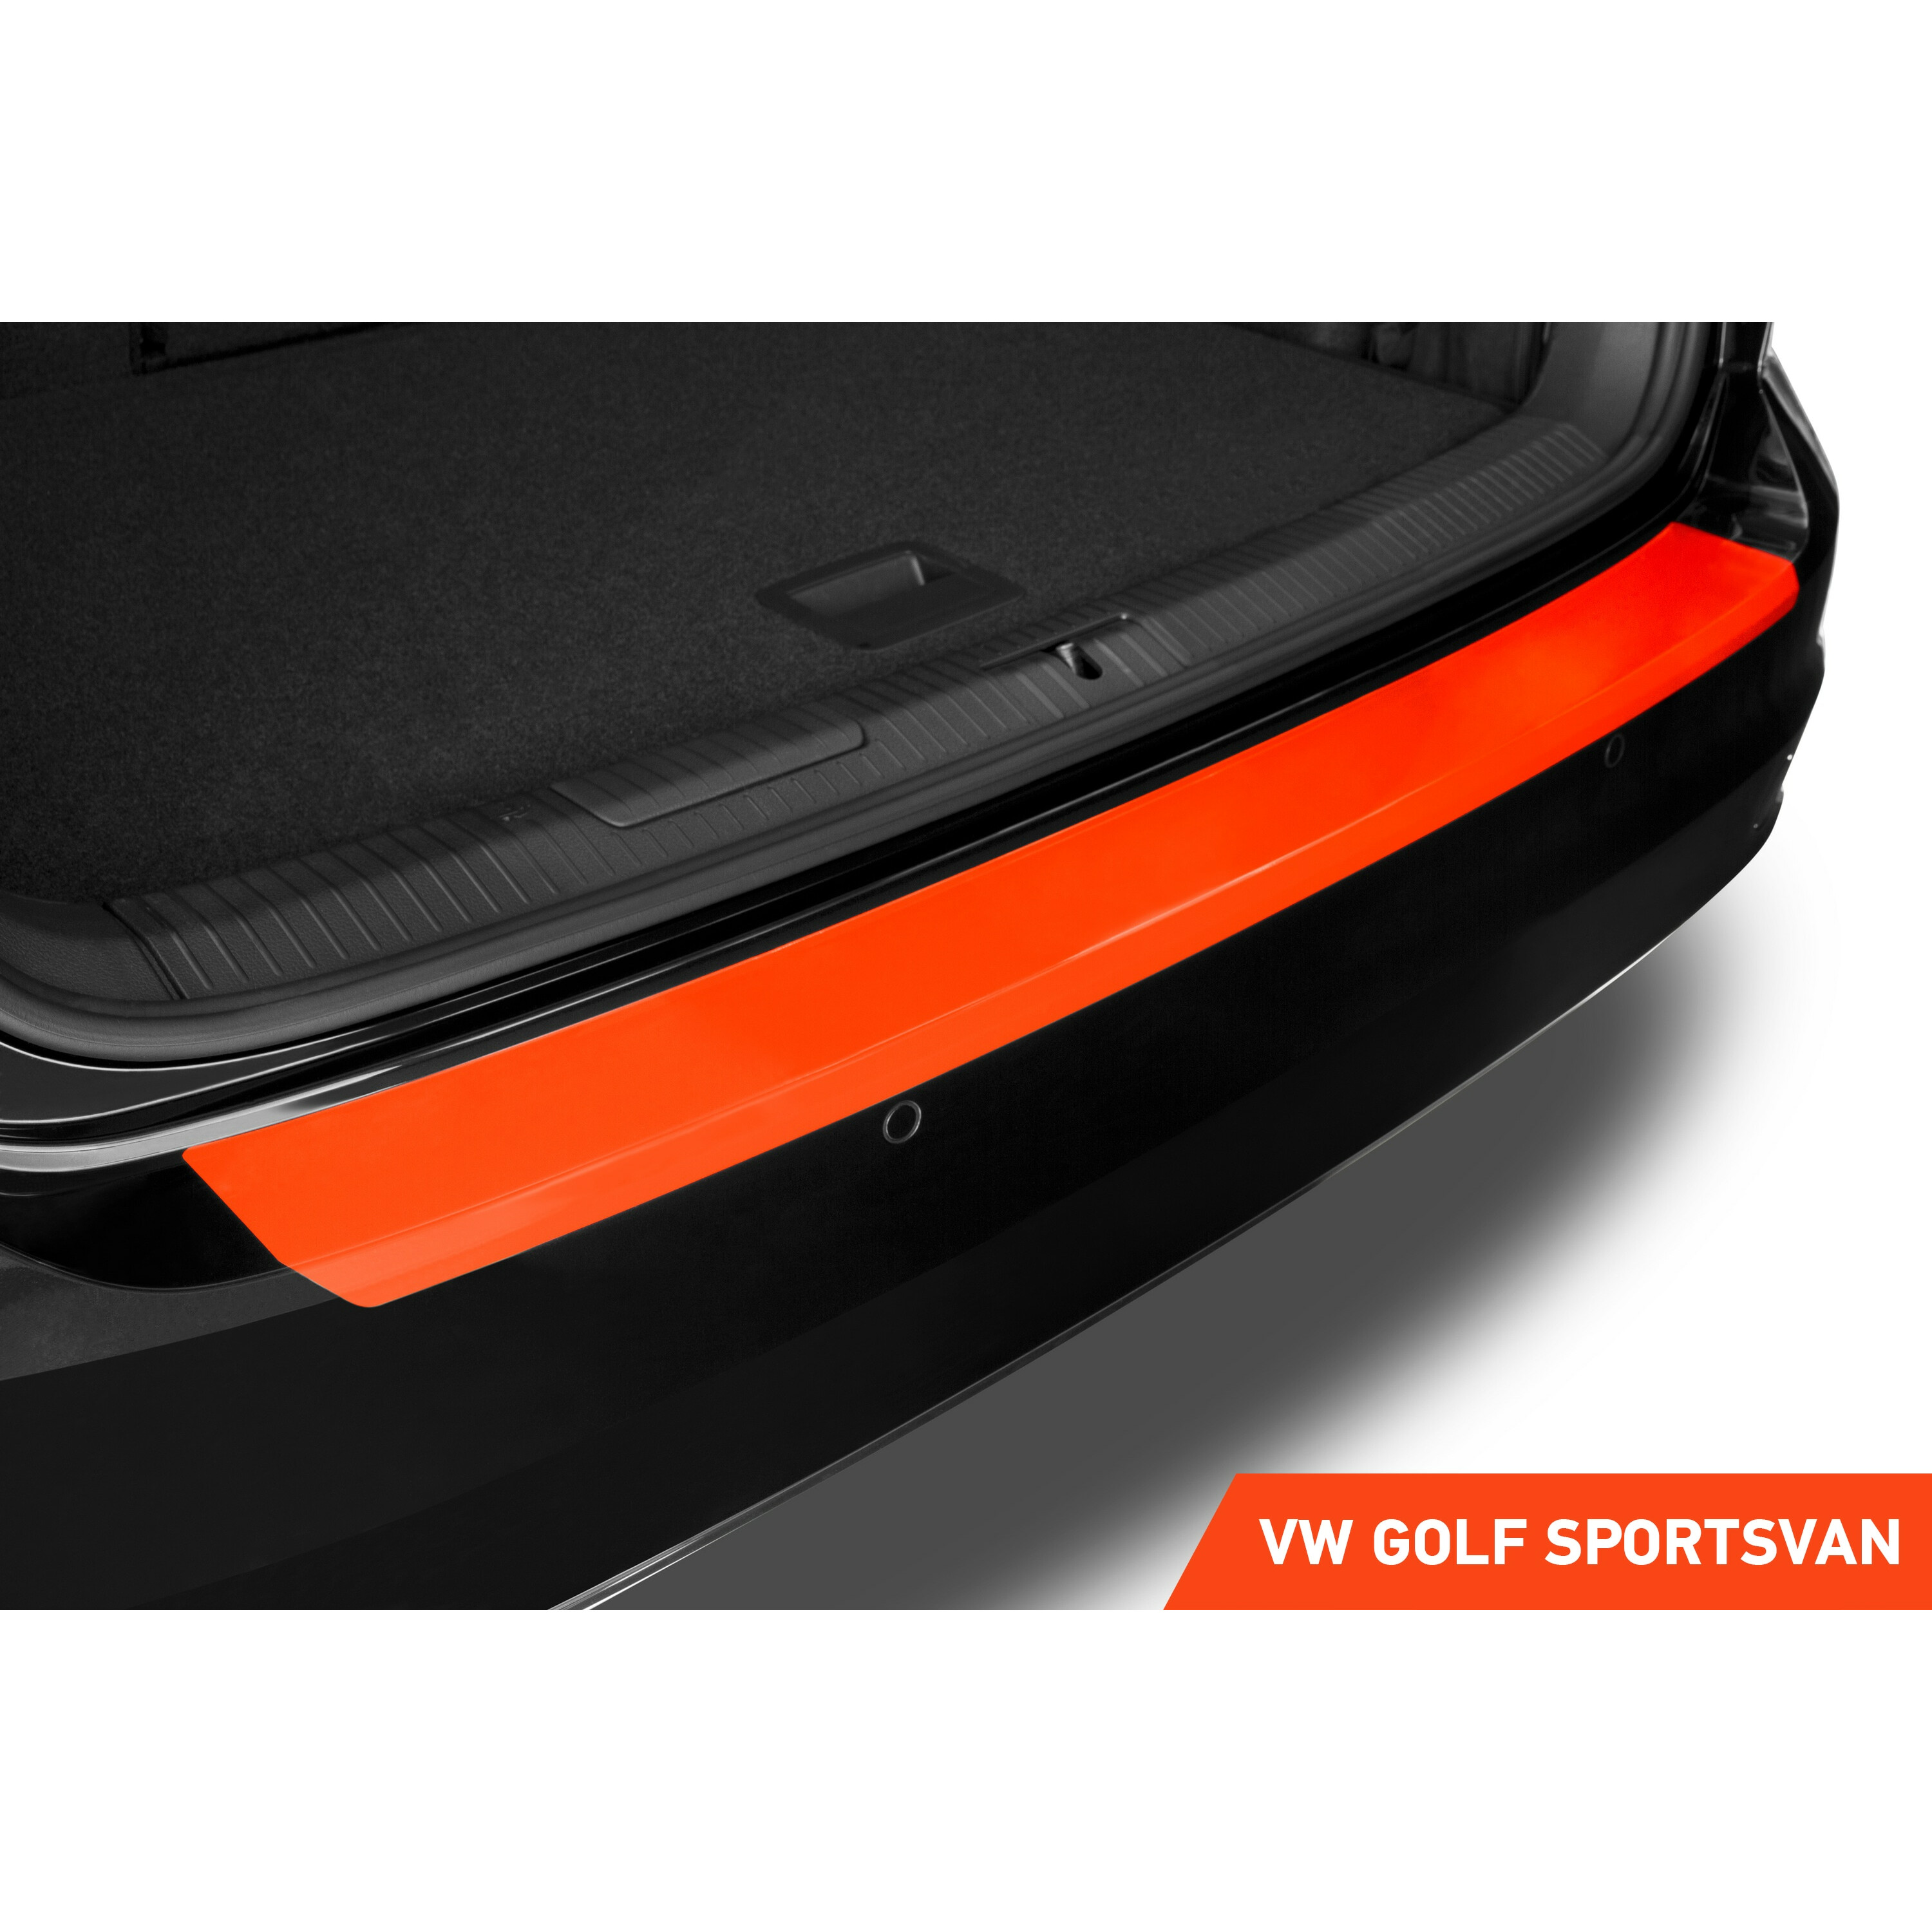 Ladekantenschutz für AM Lackschutzfoli - 2020 - I 2014 Sportsvan Golf